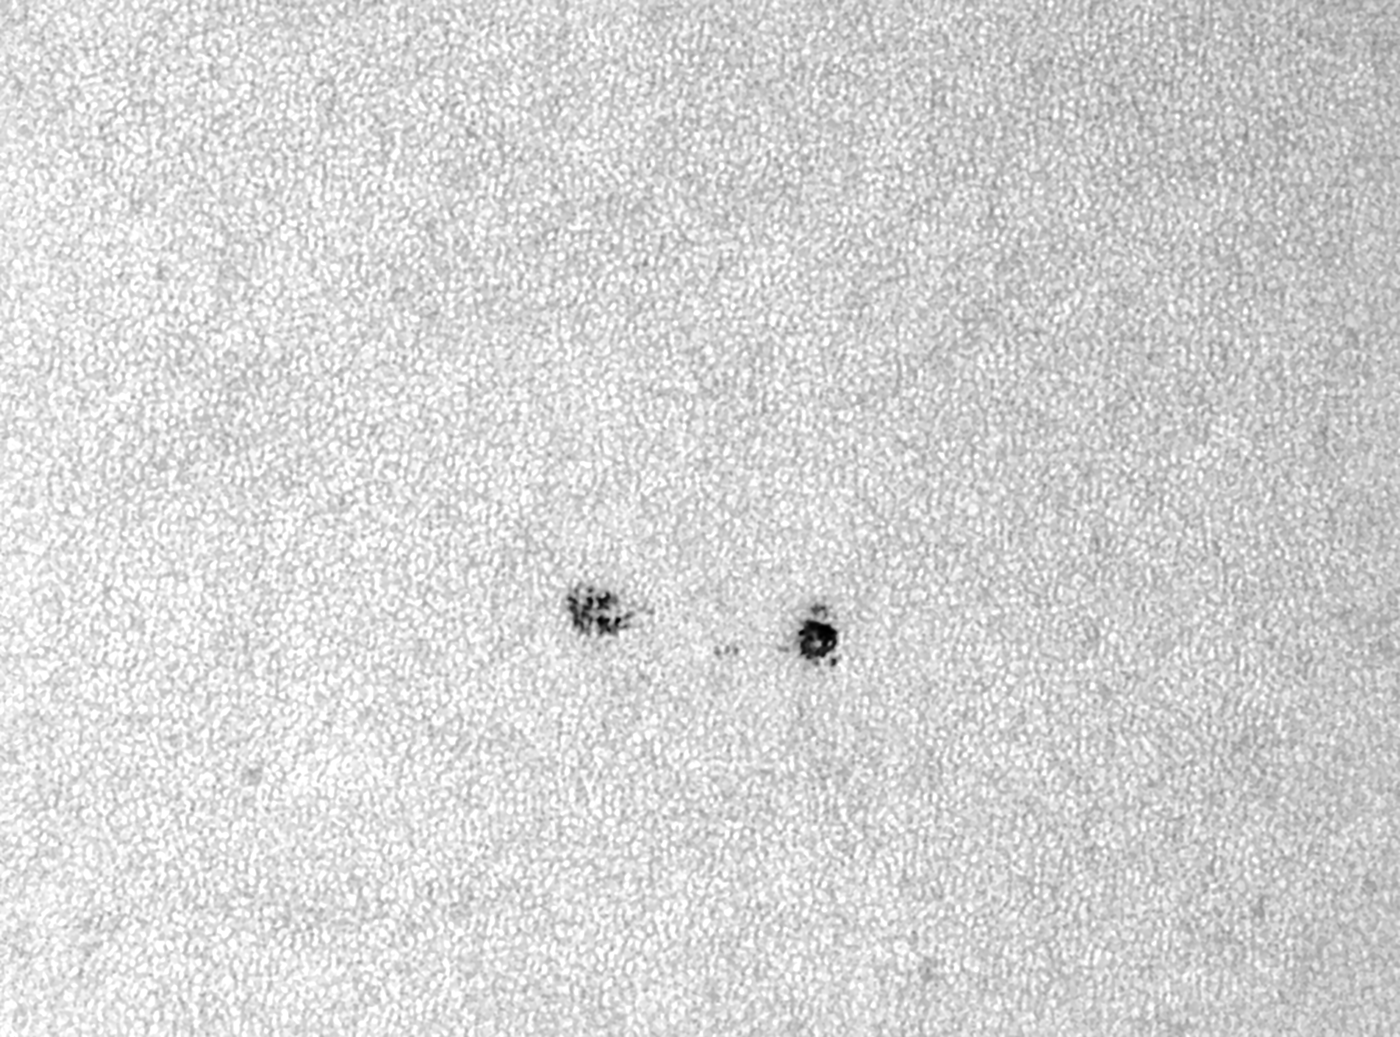 "Die Neuen" auf der Sonne - AR 2739 am 18. April 2019